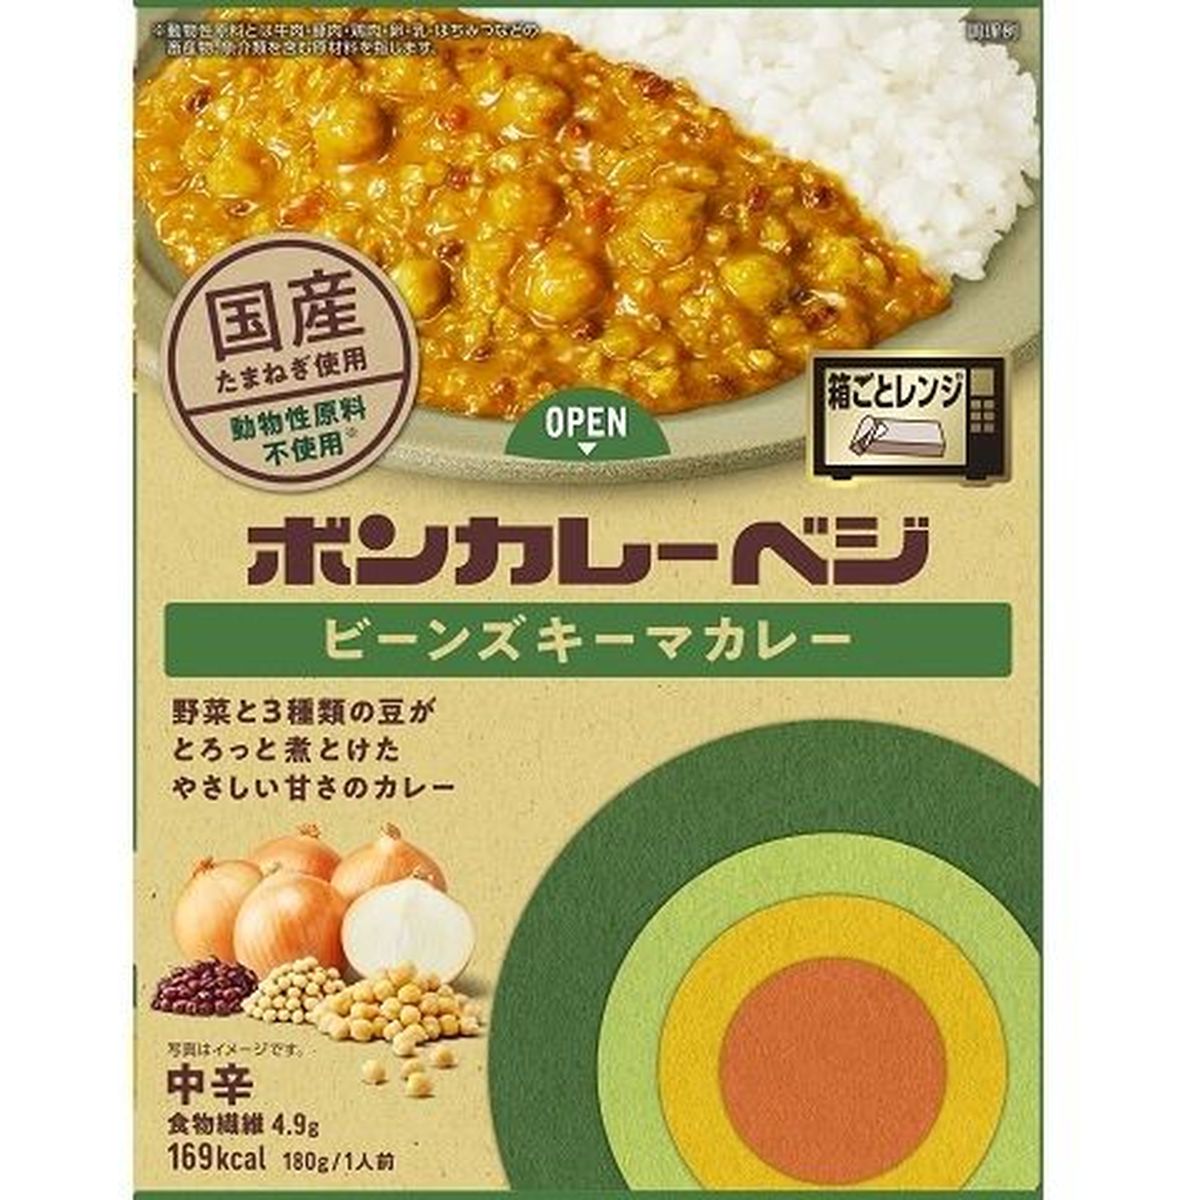 【10個入リ】大塚食品 ボンカレーベジ ビーンズキーマカレー中辛 180g